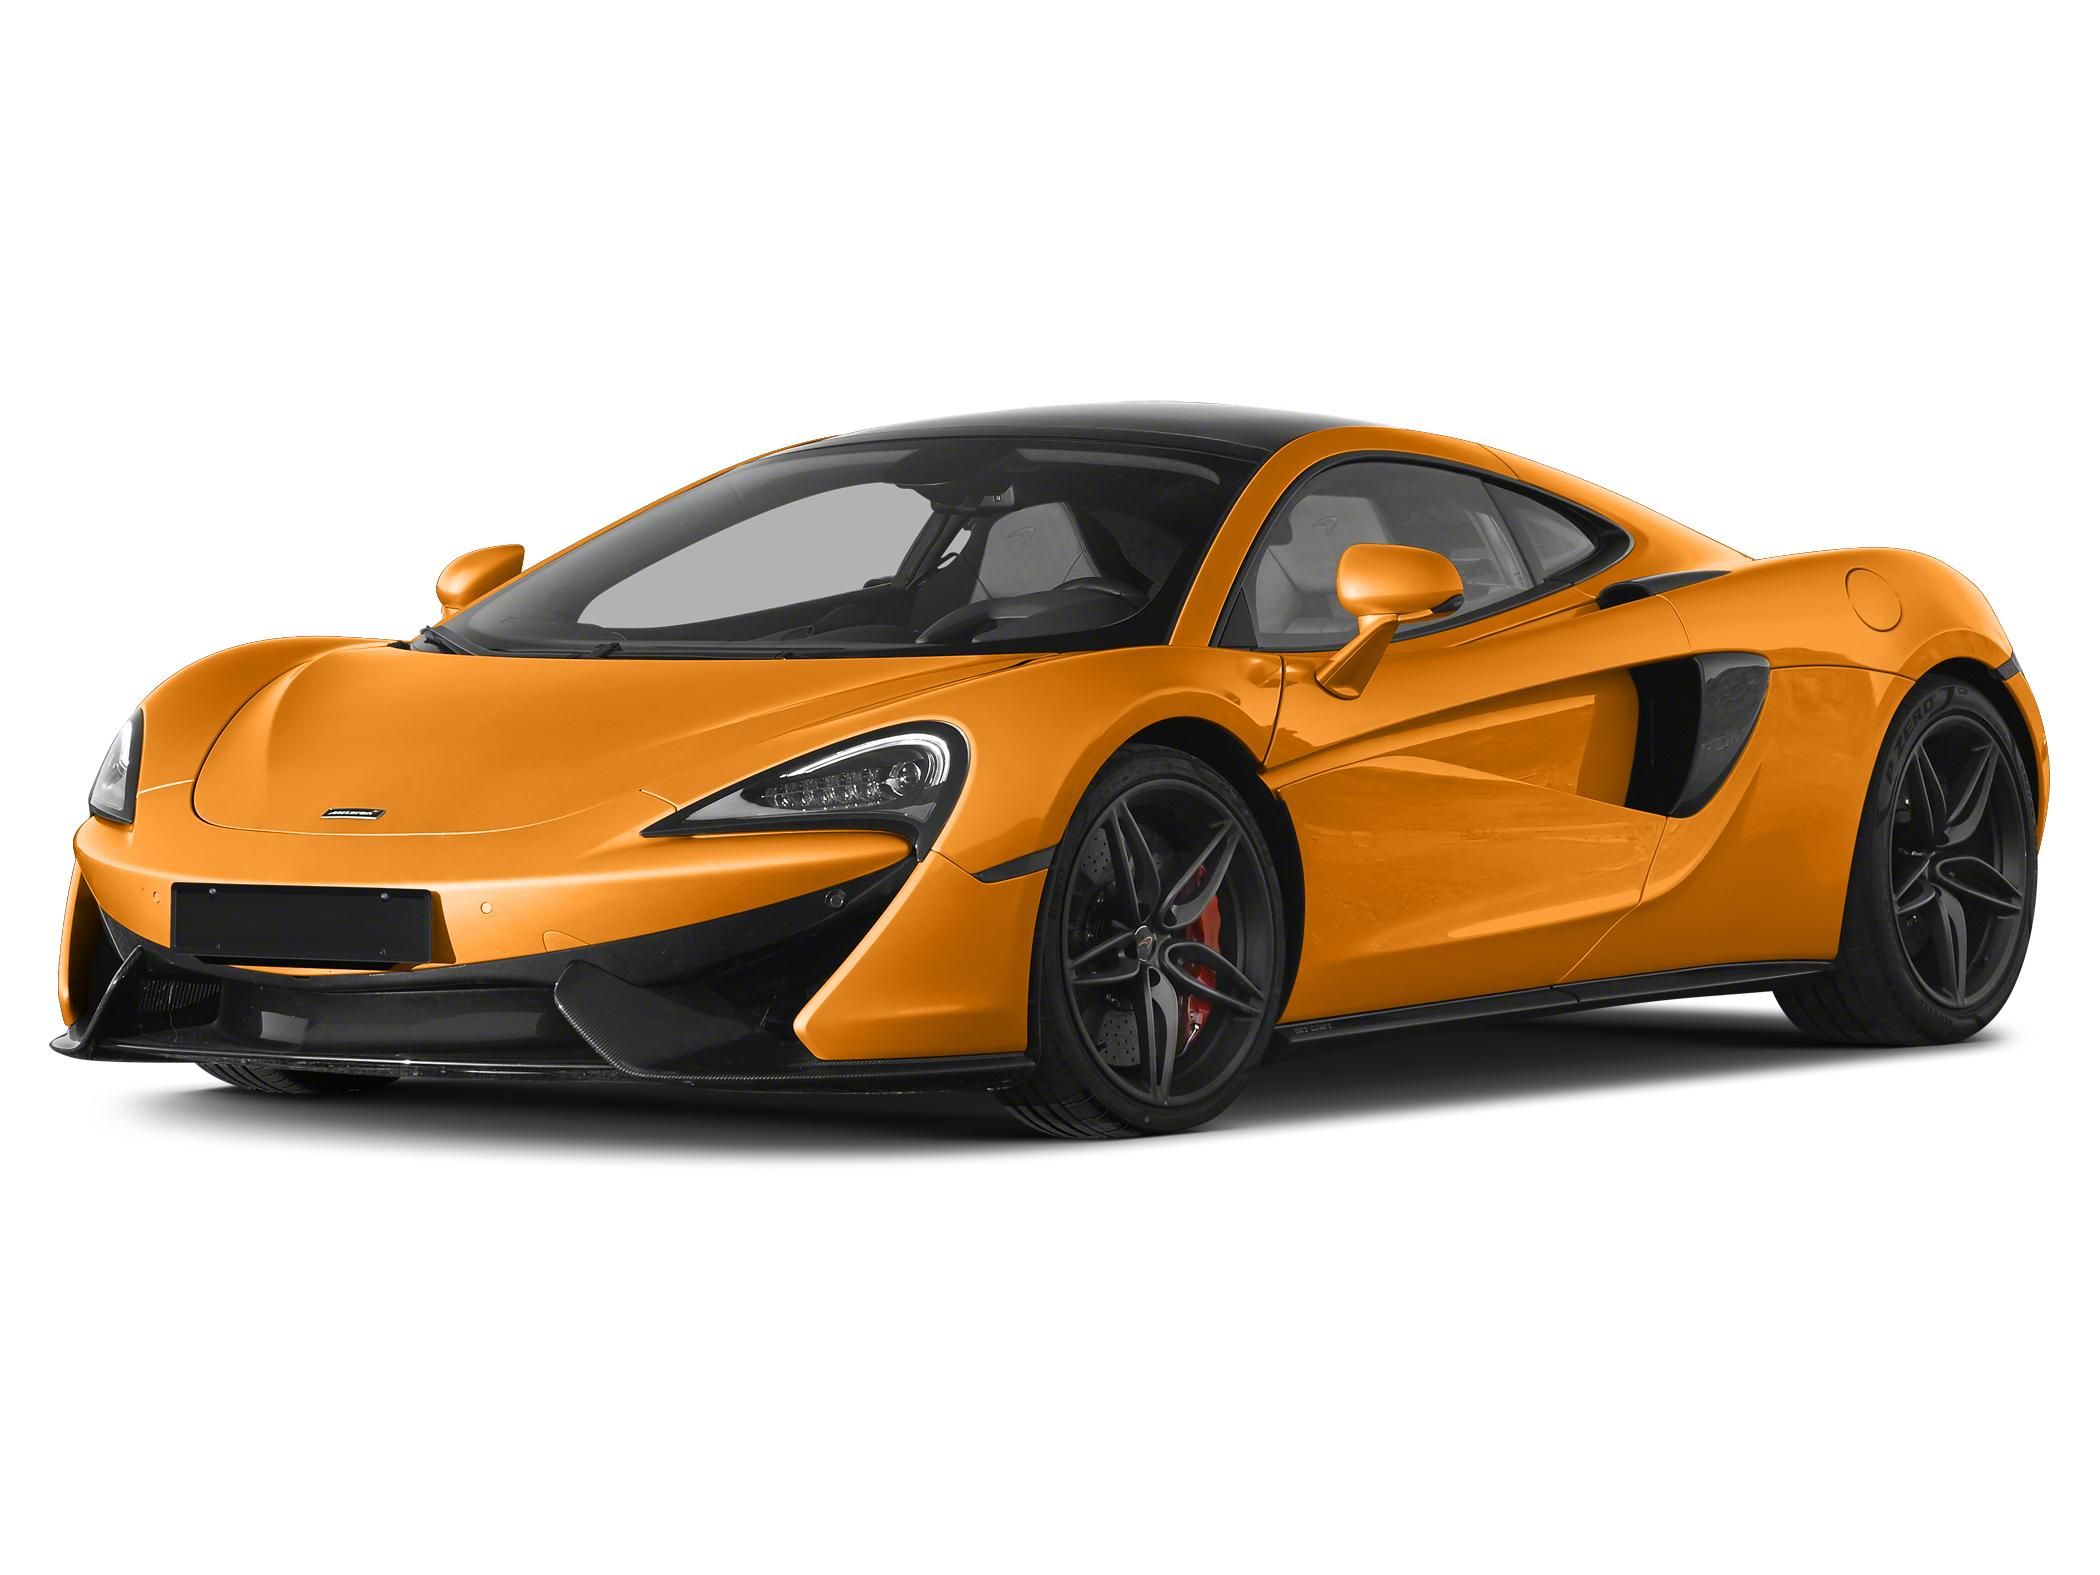 2019 McLaren 570GT